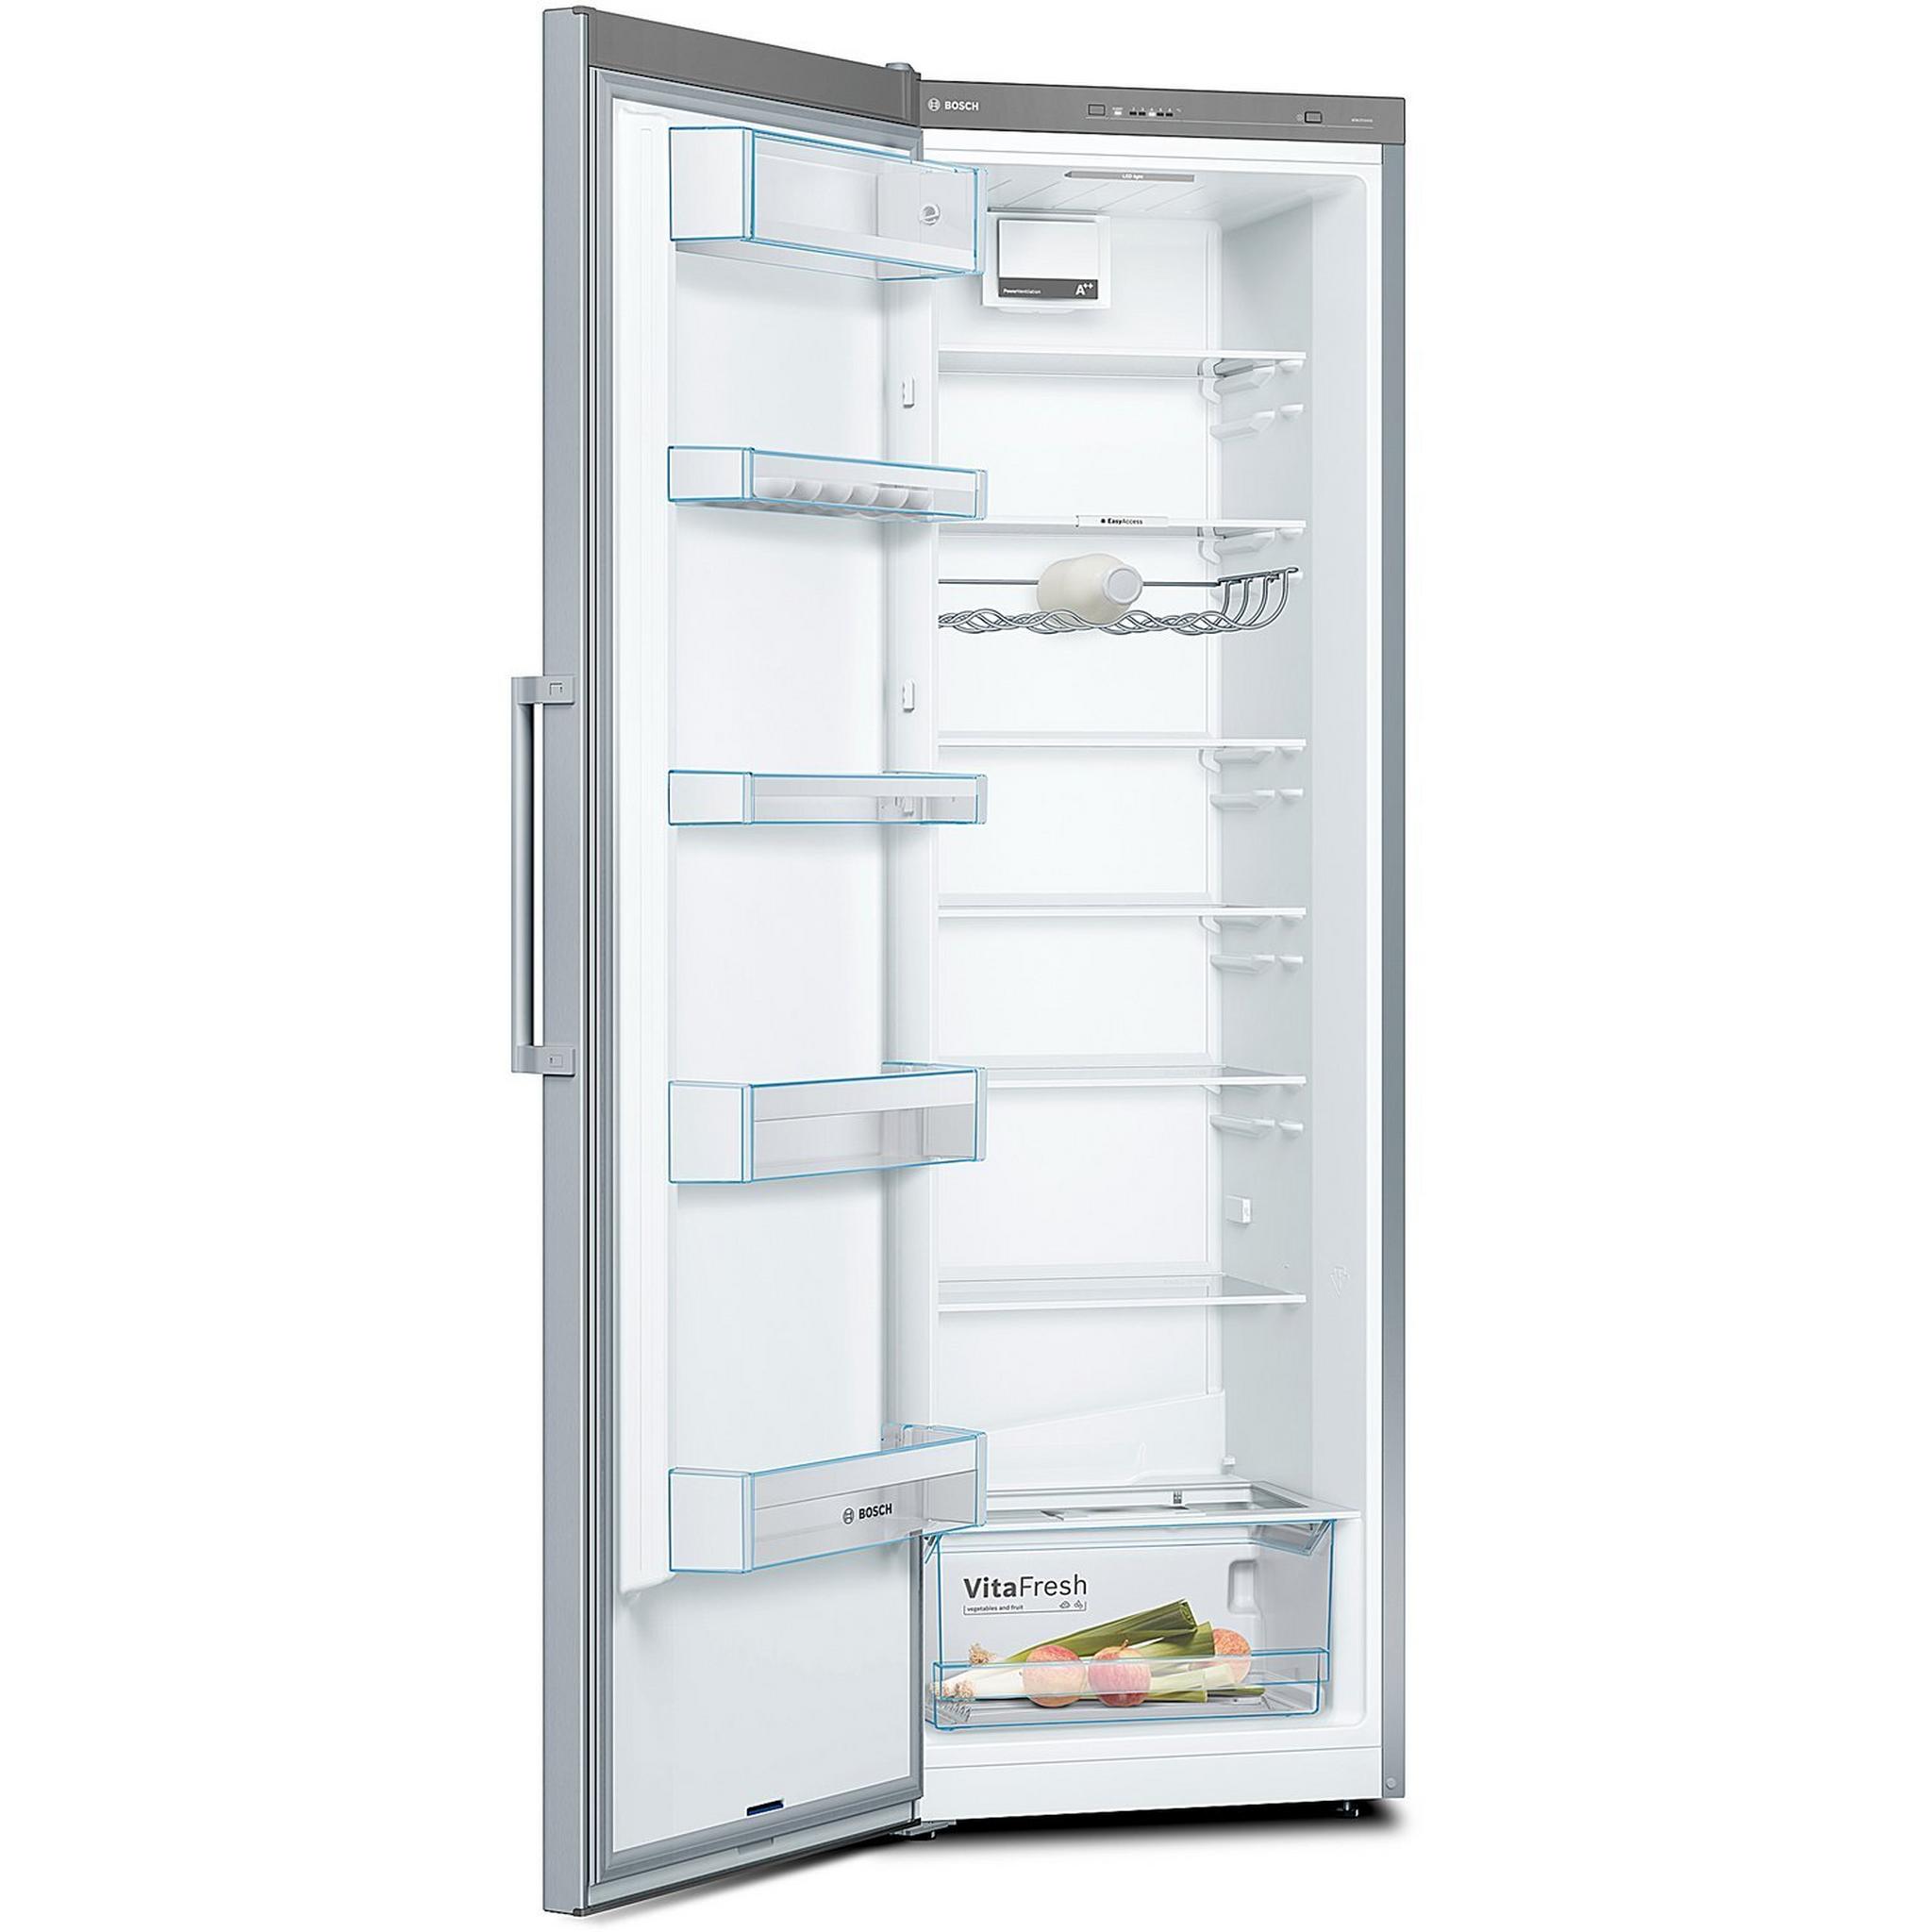 Bosch 12CFT Single Door Refrigerator - (KSV36VL3PG)